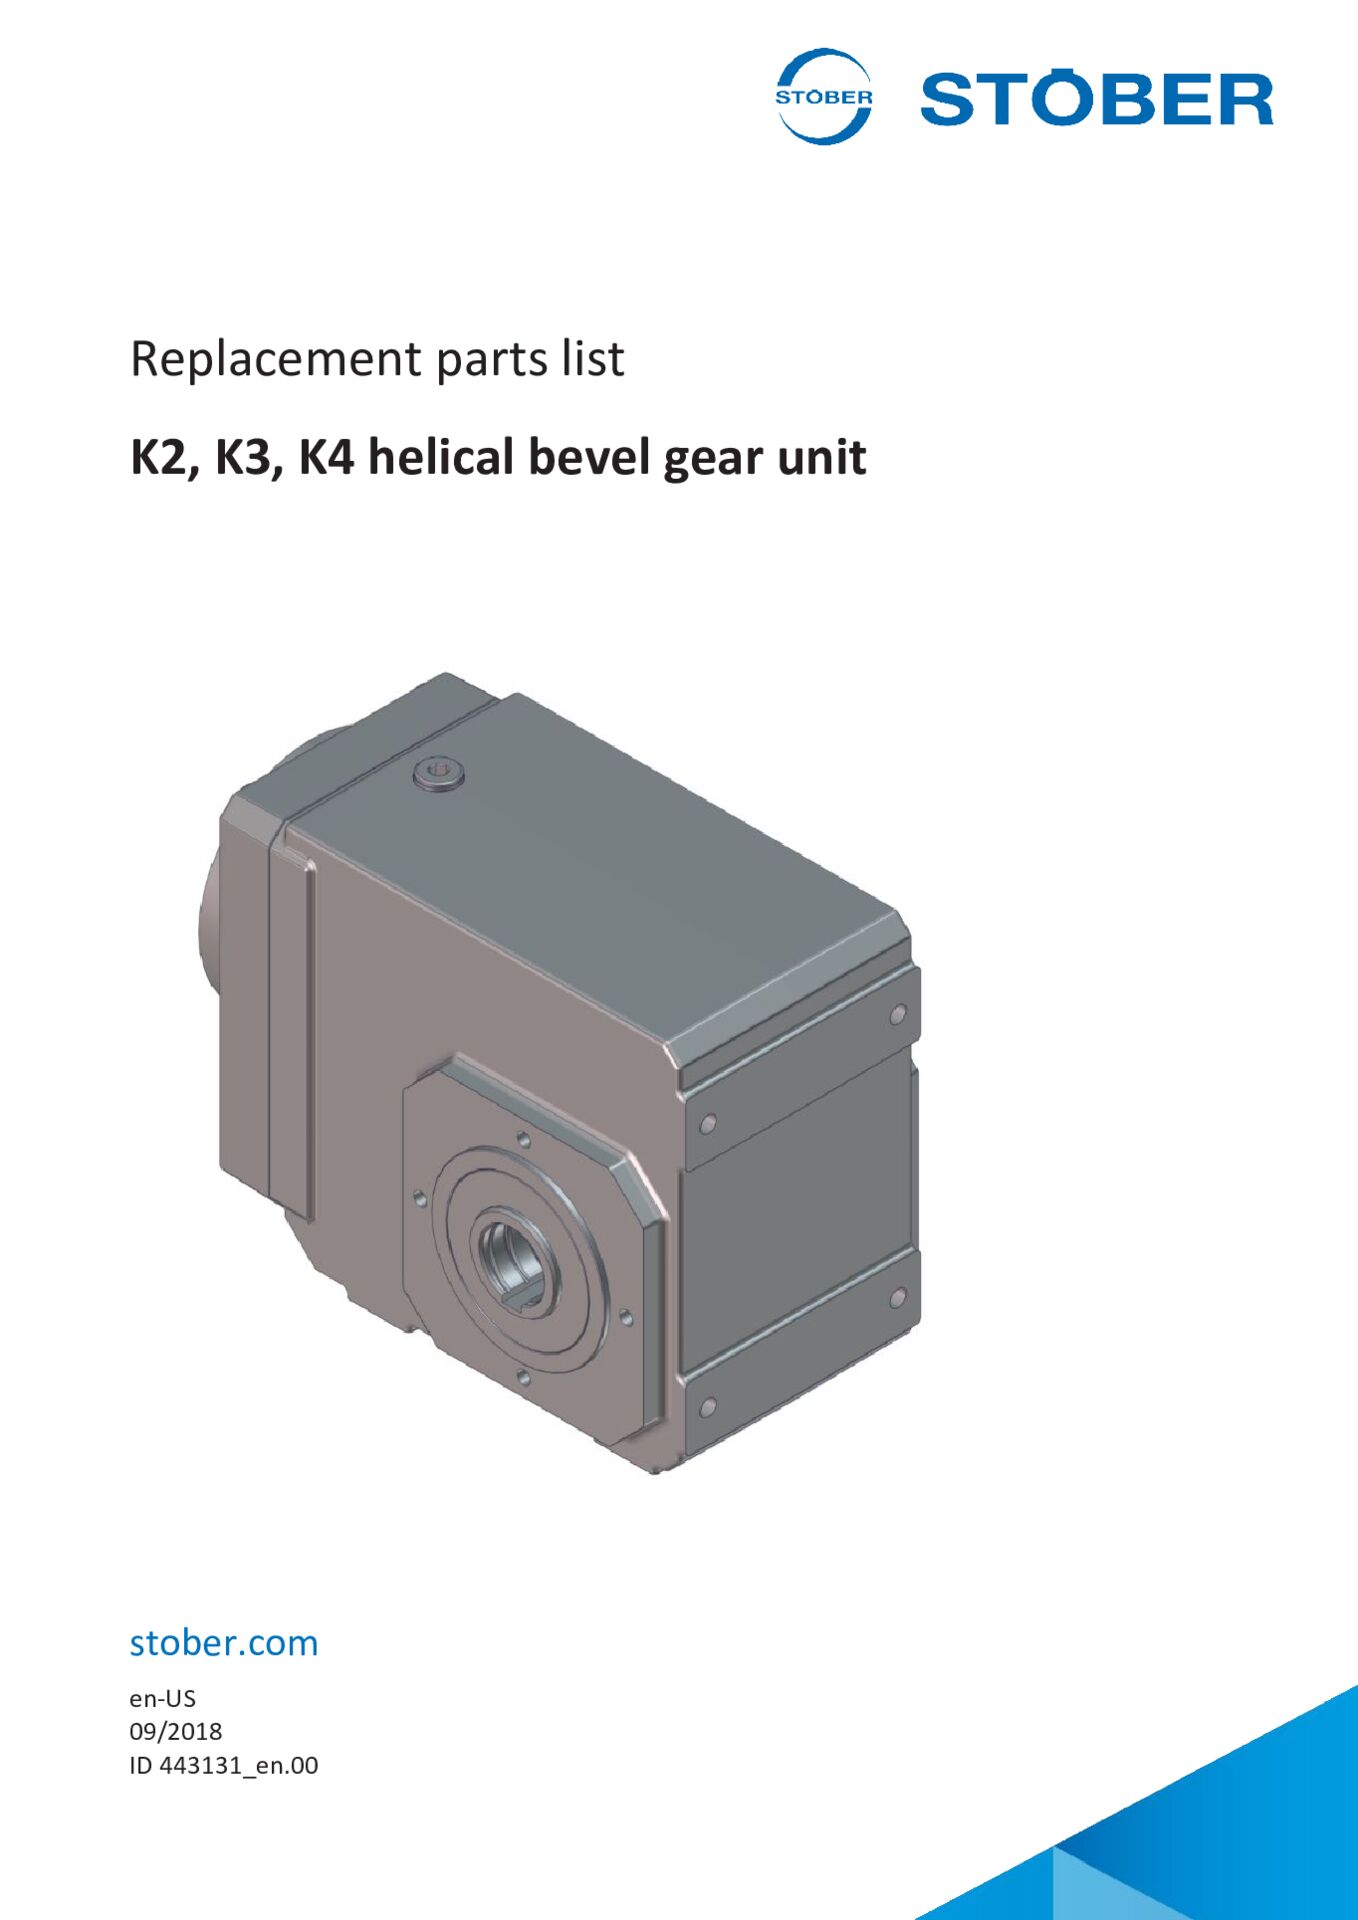 Replacement parts list K2 K3 K4 helical bevel gear unit